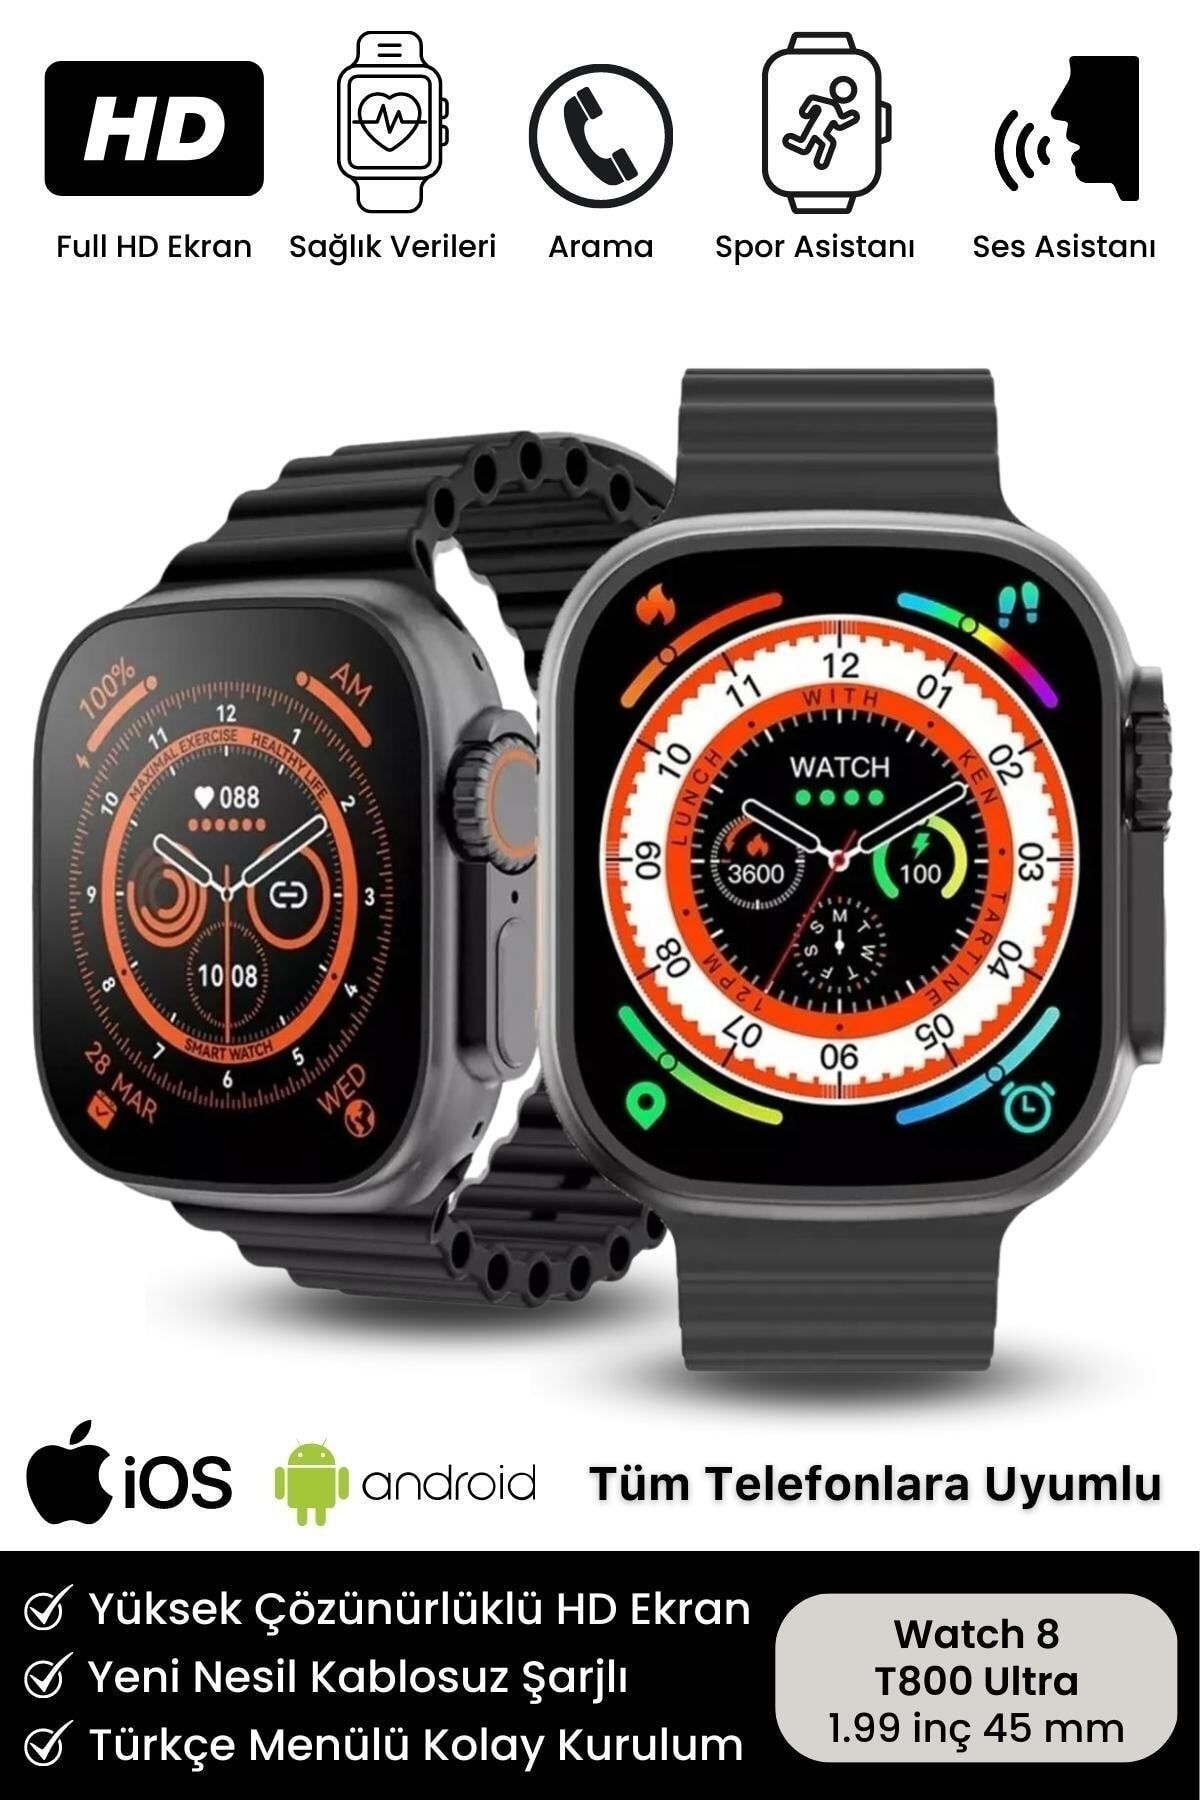 Noriyen Watch 8 Ultra Series Ios Android Uyumlu T 800 Serisi Spor ve Sağlık Sensörlü T800 Ultra Akıllı Saat